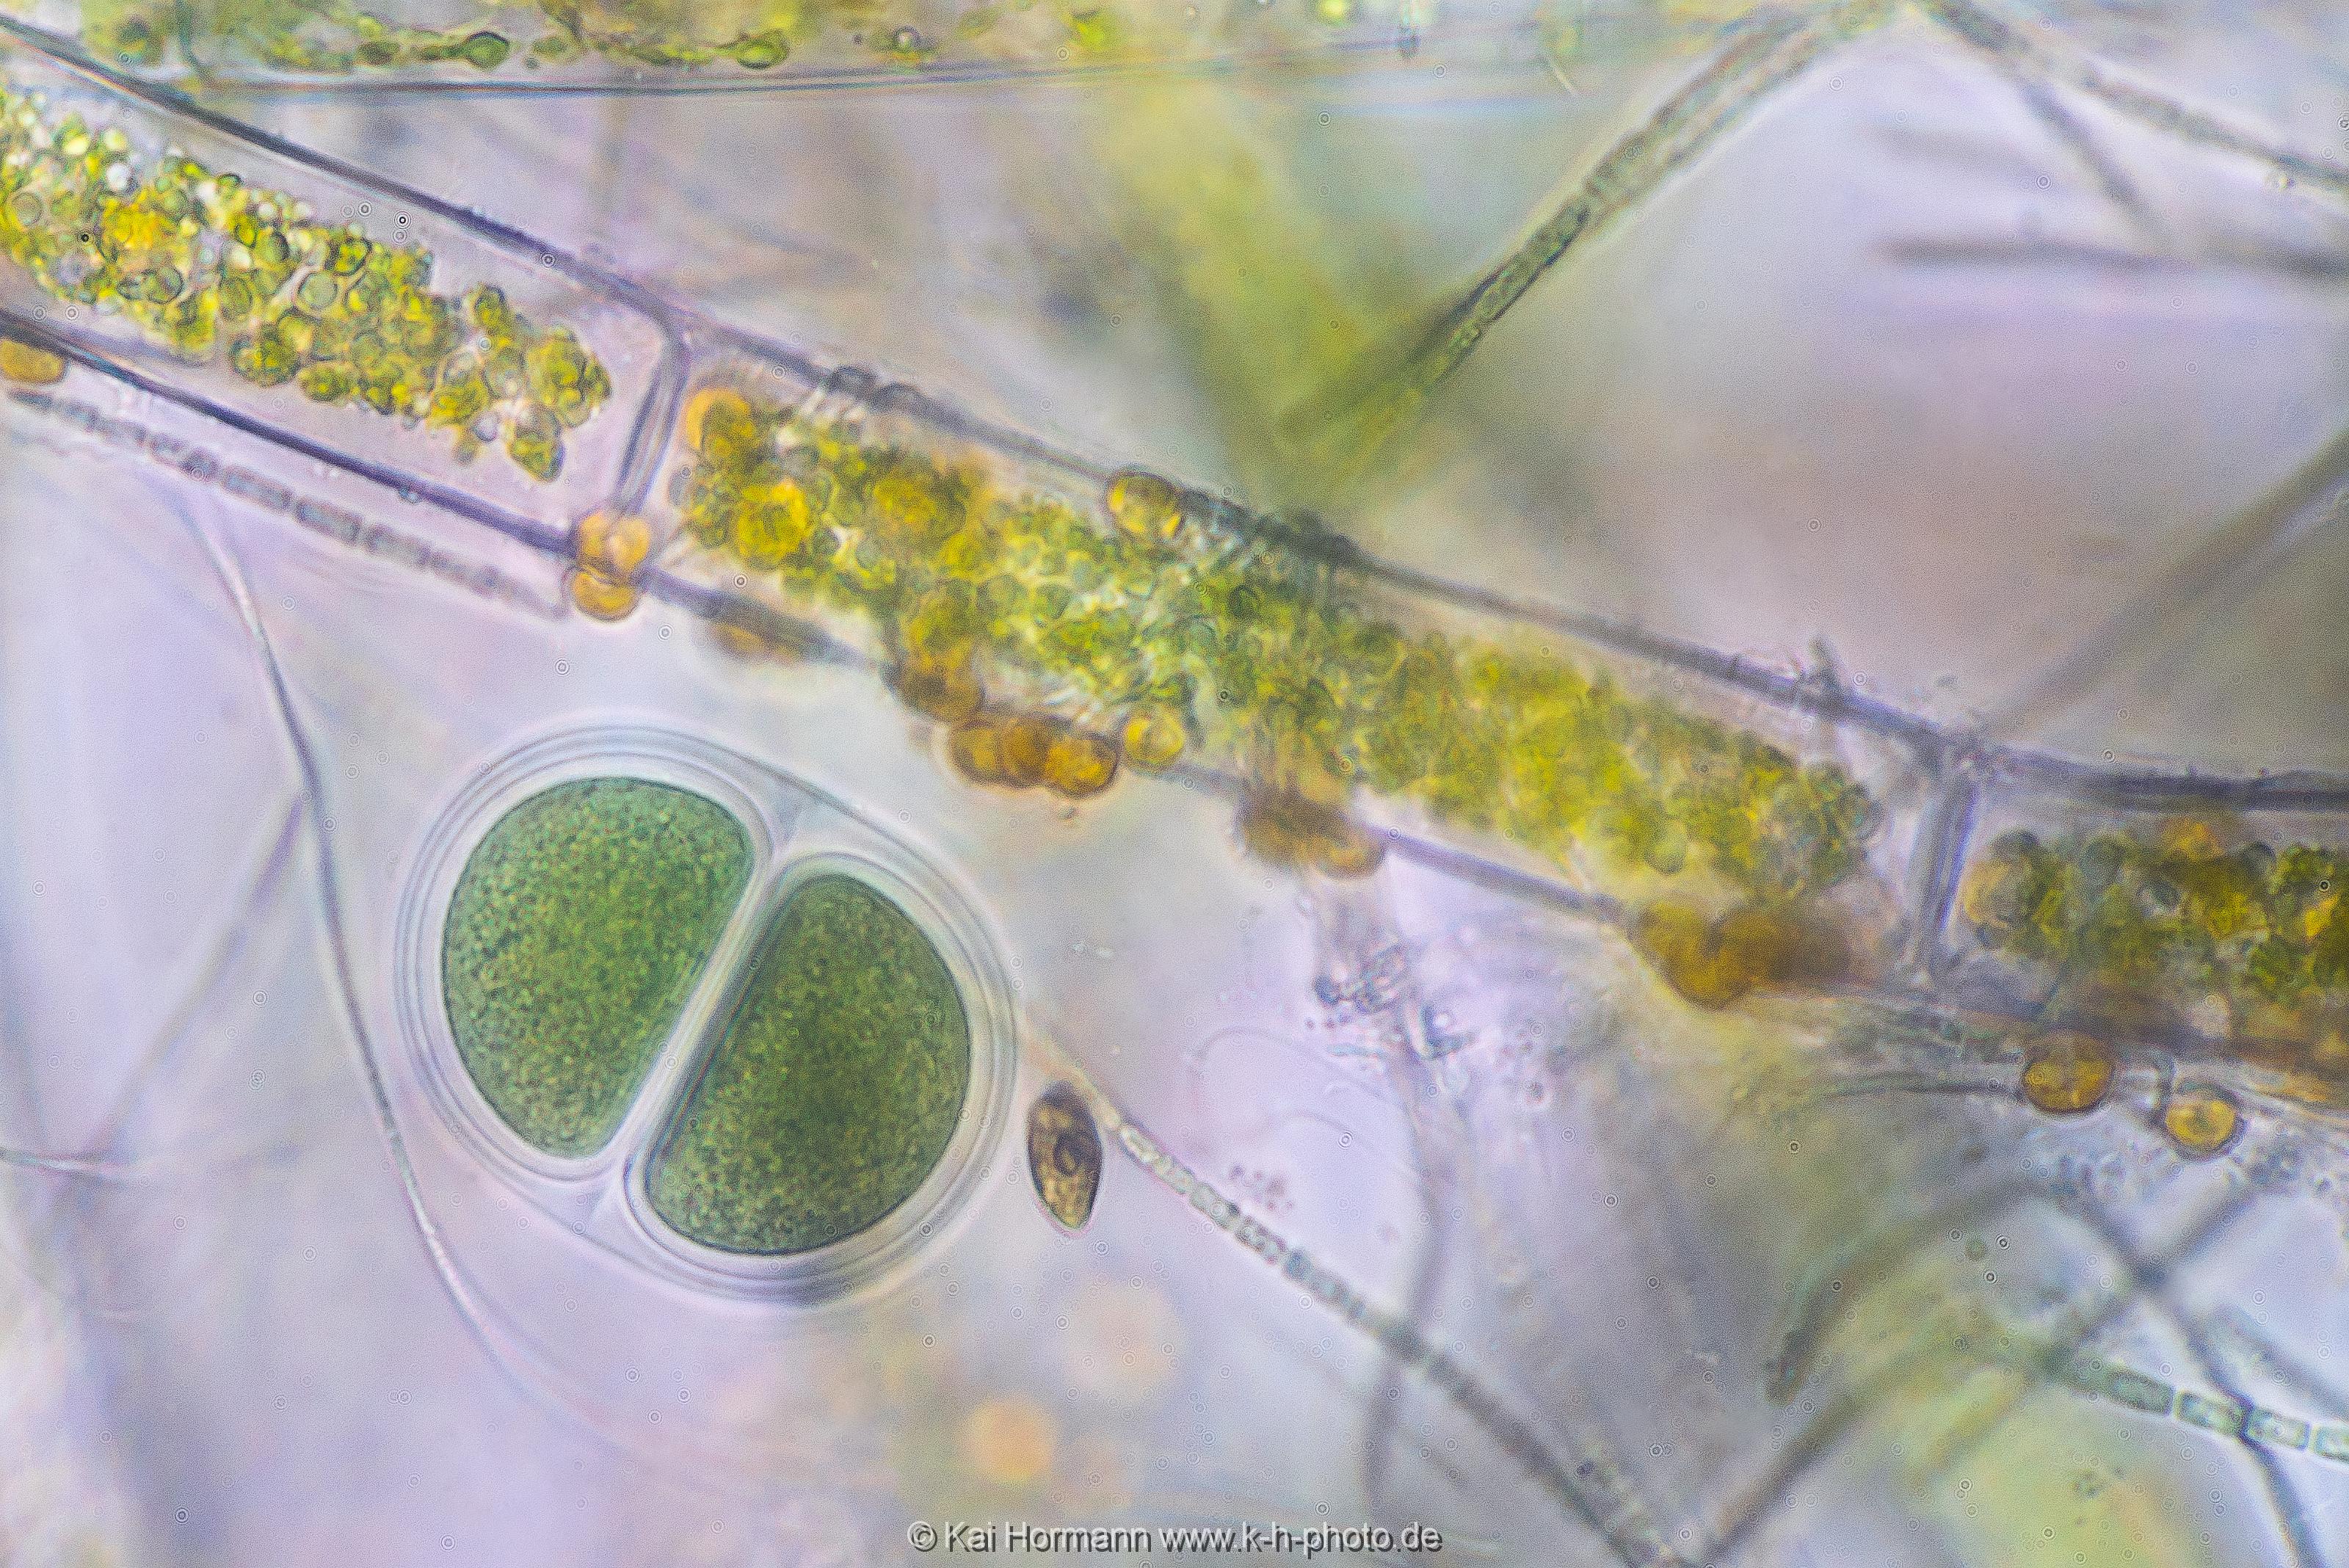 Kugelblaualge Mikrofotografie: Mikroskopische Aufnahmen von Einzellern, Algen und Kleinstlebewesen.